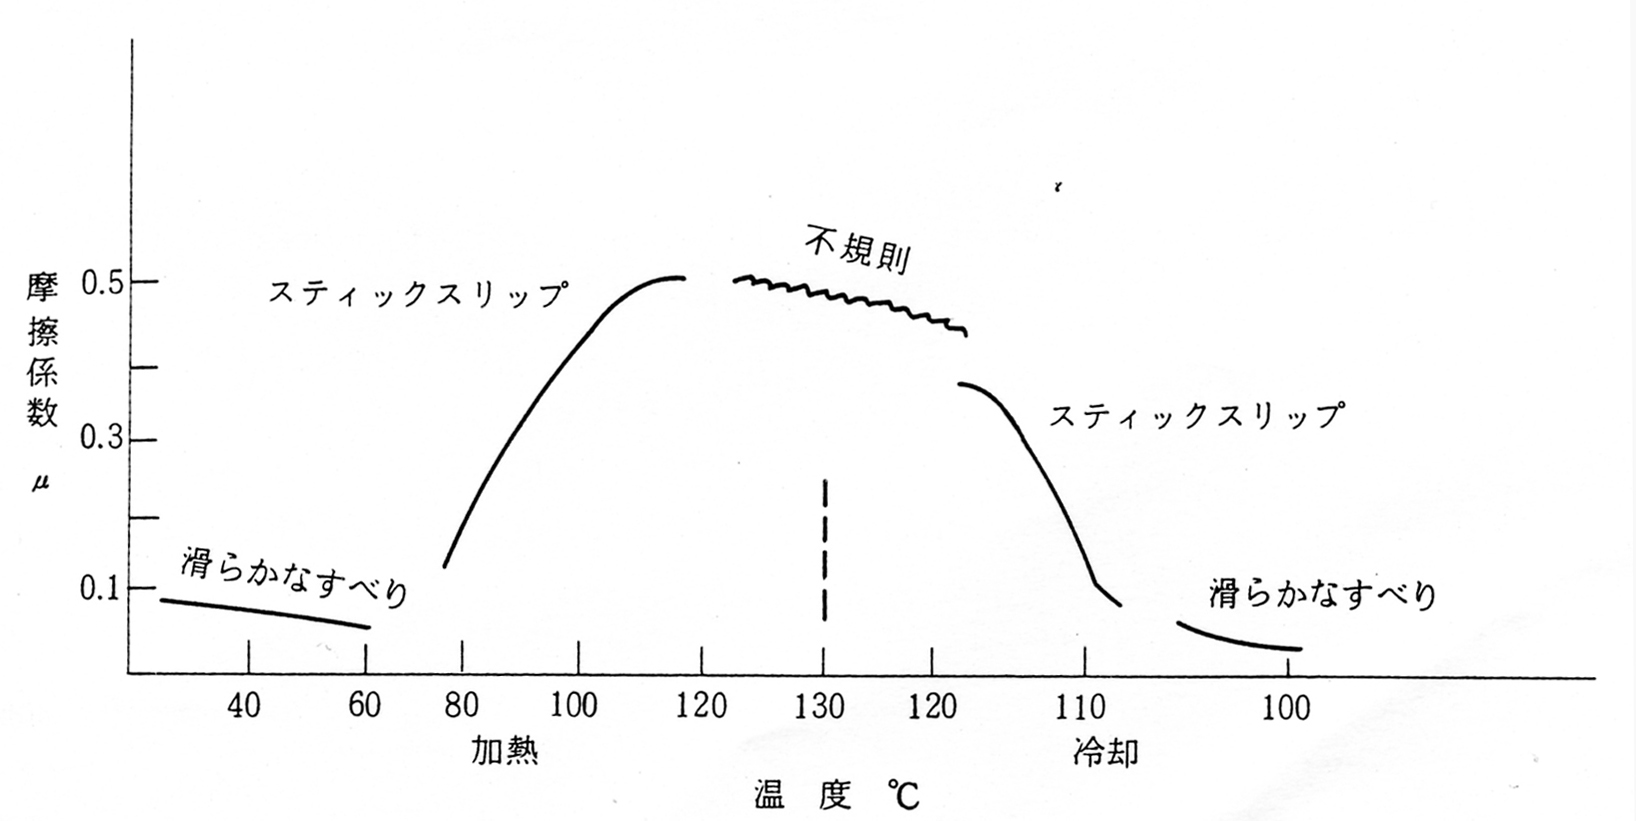 パルミチン酸の摩擦係数と温度関係